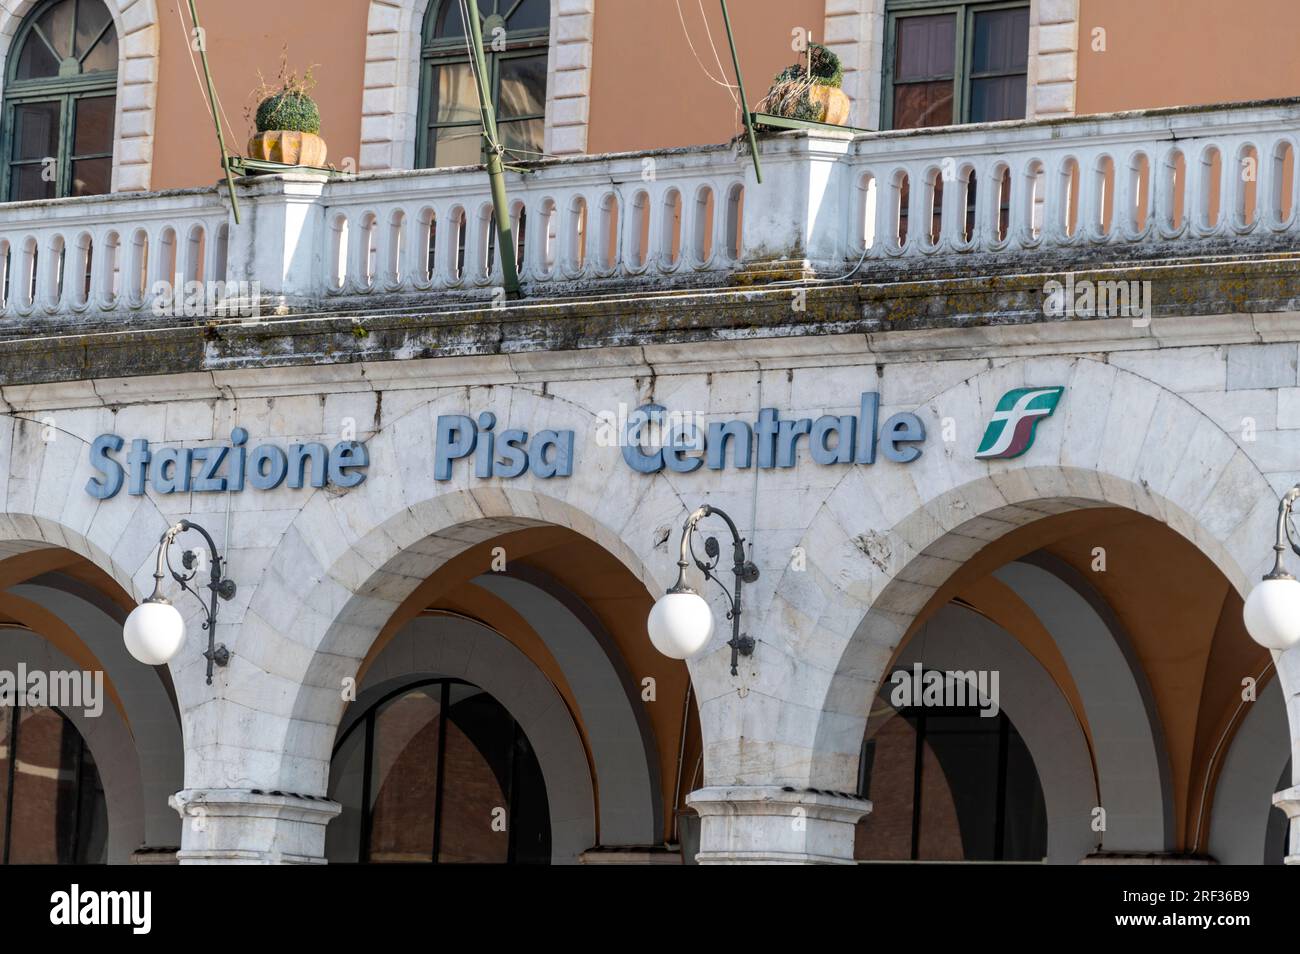 La gare centrale de Pise (gare centrale de Pise) est un terminal ferroviaire situé à Pise dans la région toscane de l'Italie. Banque D'Images